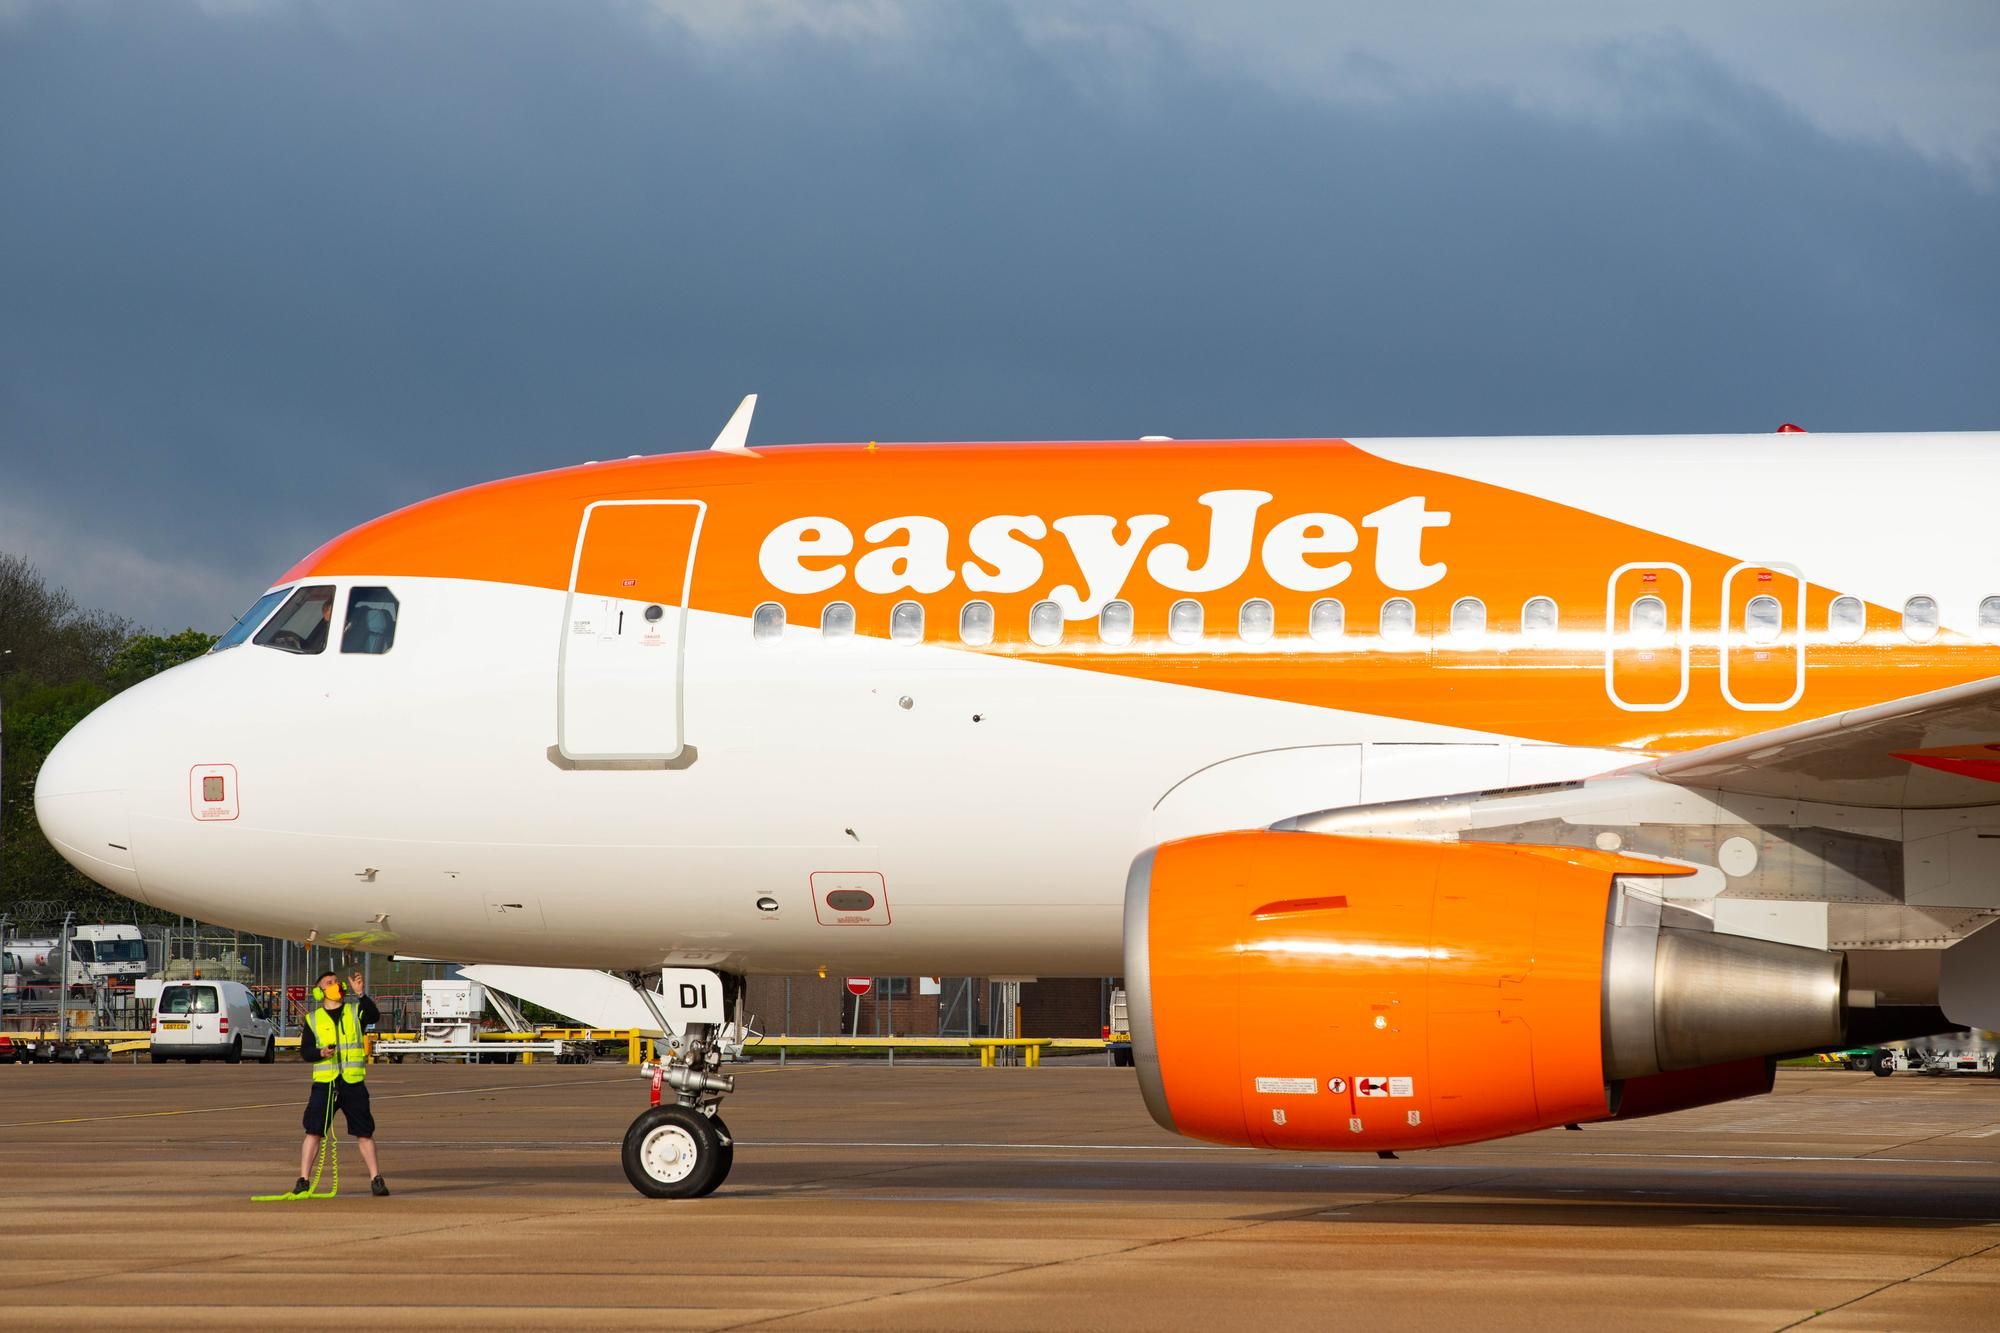 EasyJet занимает места в аэропорту Дублина, что может привести к конфликту с Ryanair